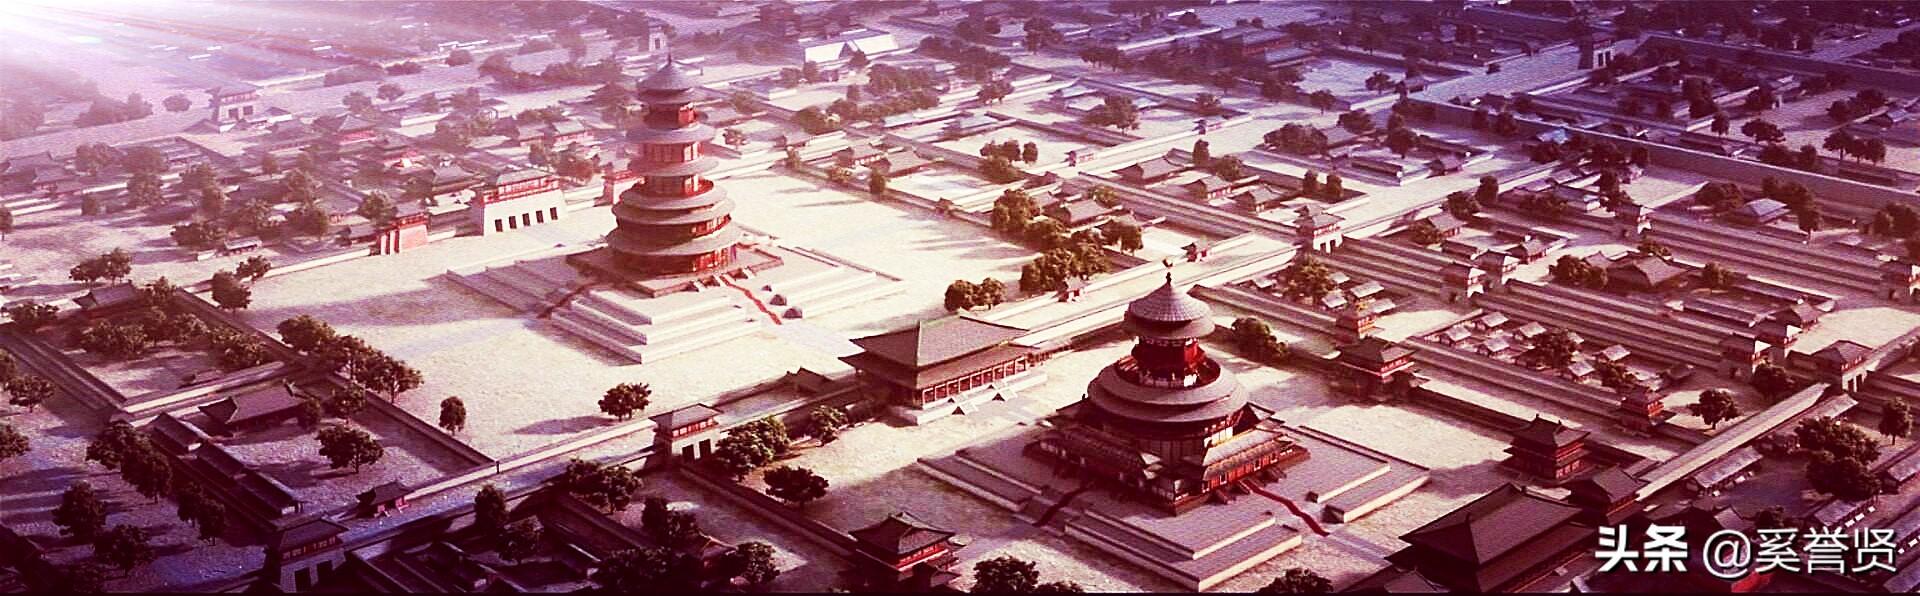 为什么说洛阳紫微城是中国历史上最伟大的皇宫